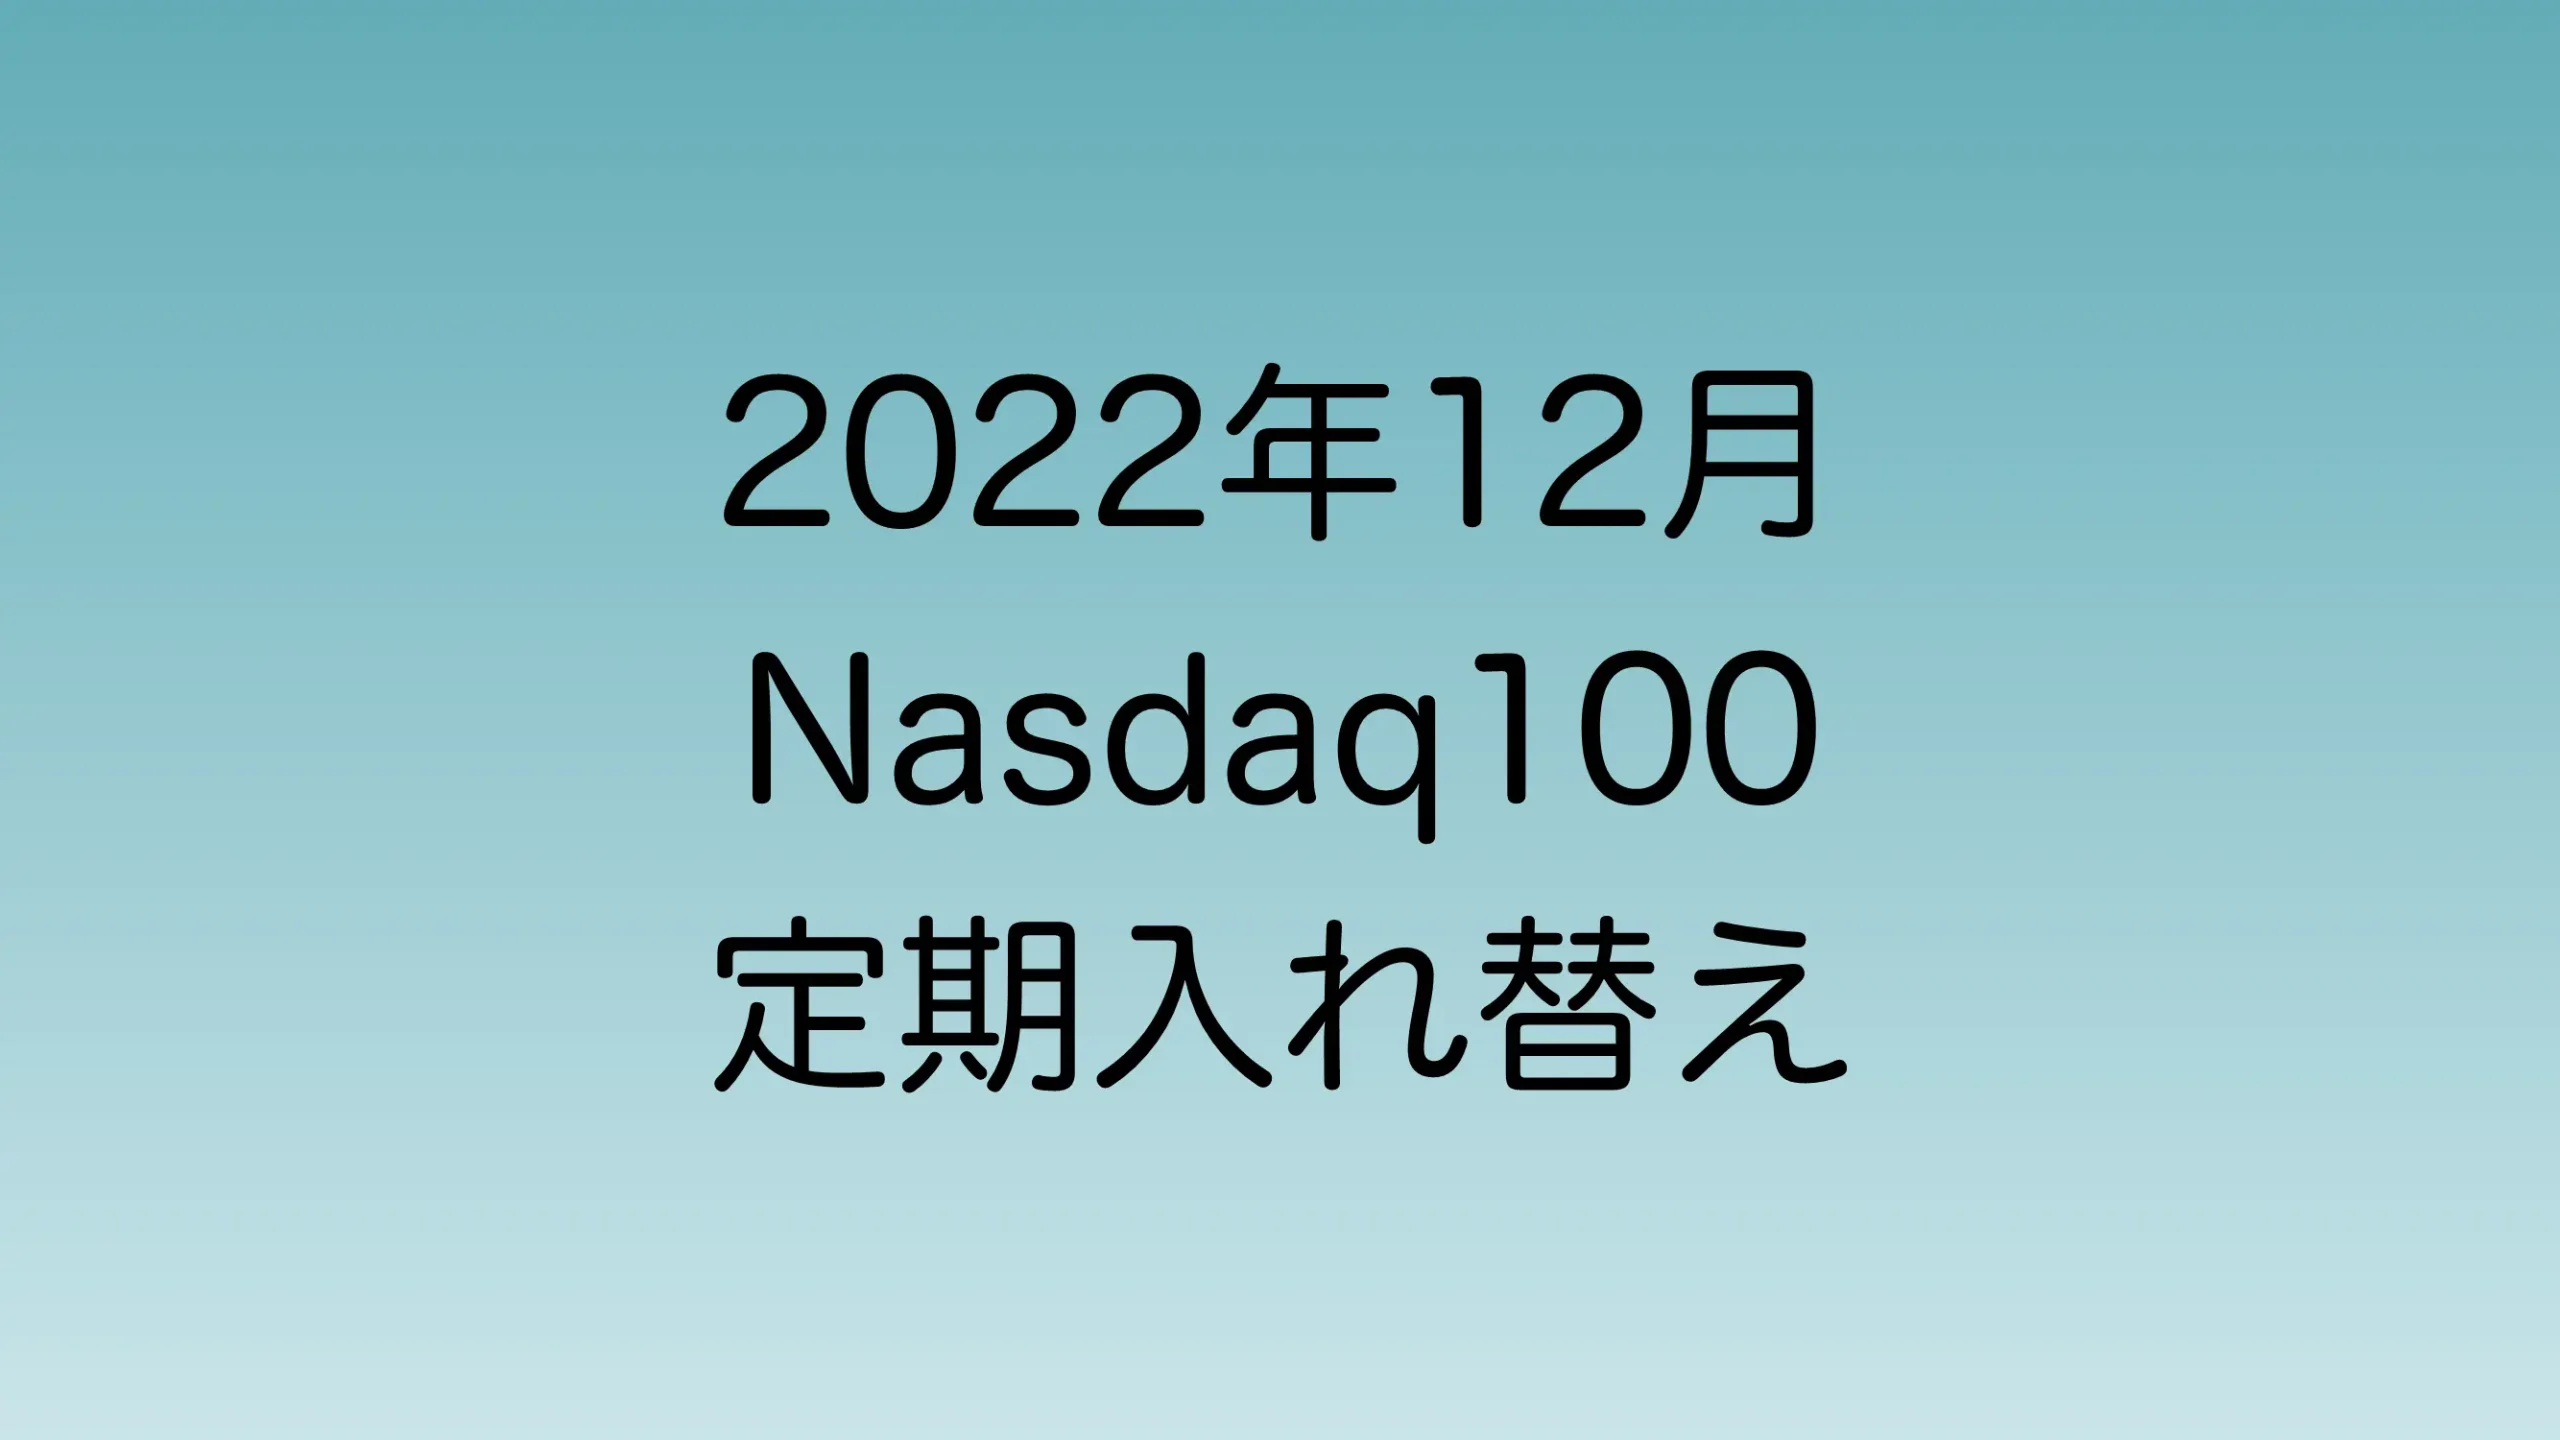 2022年12月に行われたNasdaq100定期入れ替えについて解説